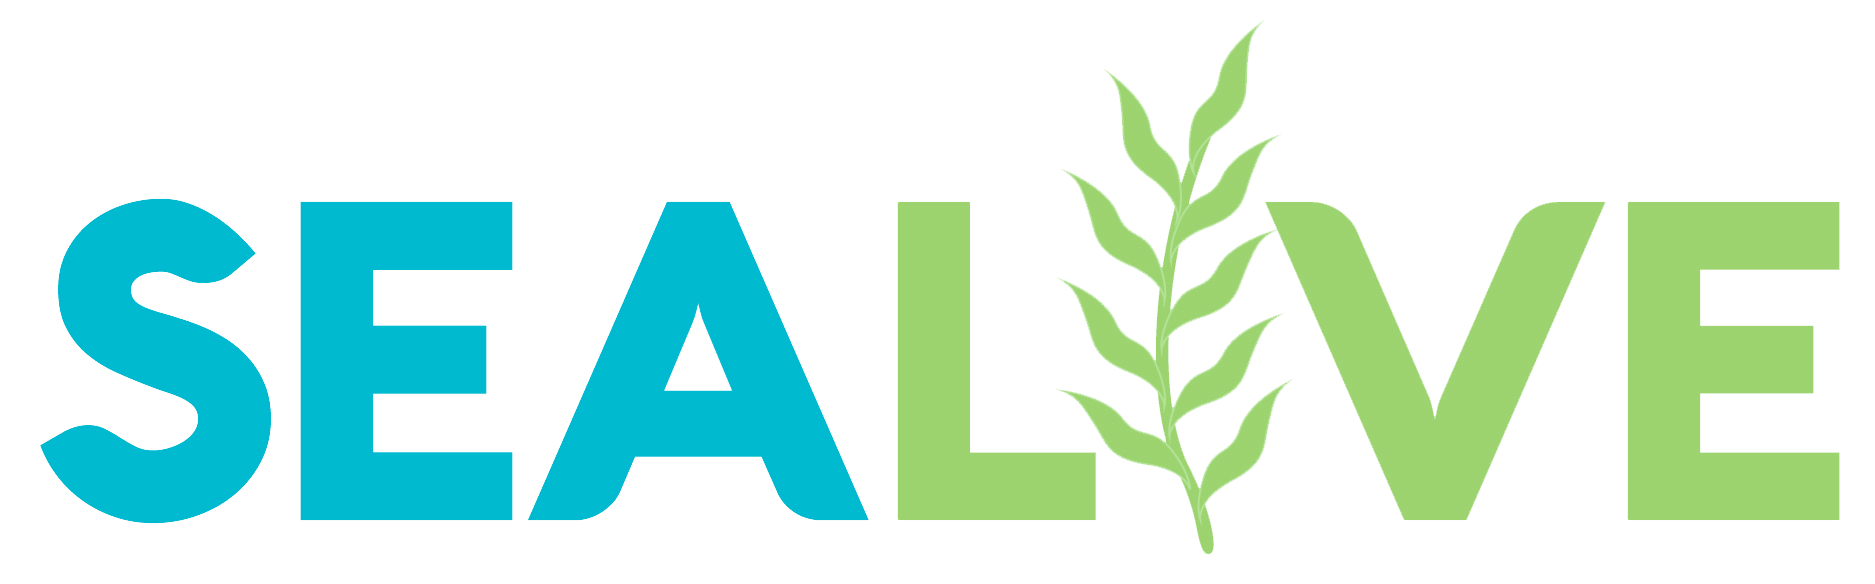 SEALIVE - logo